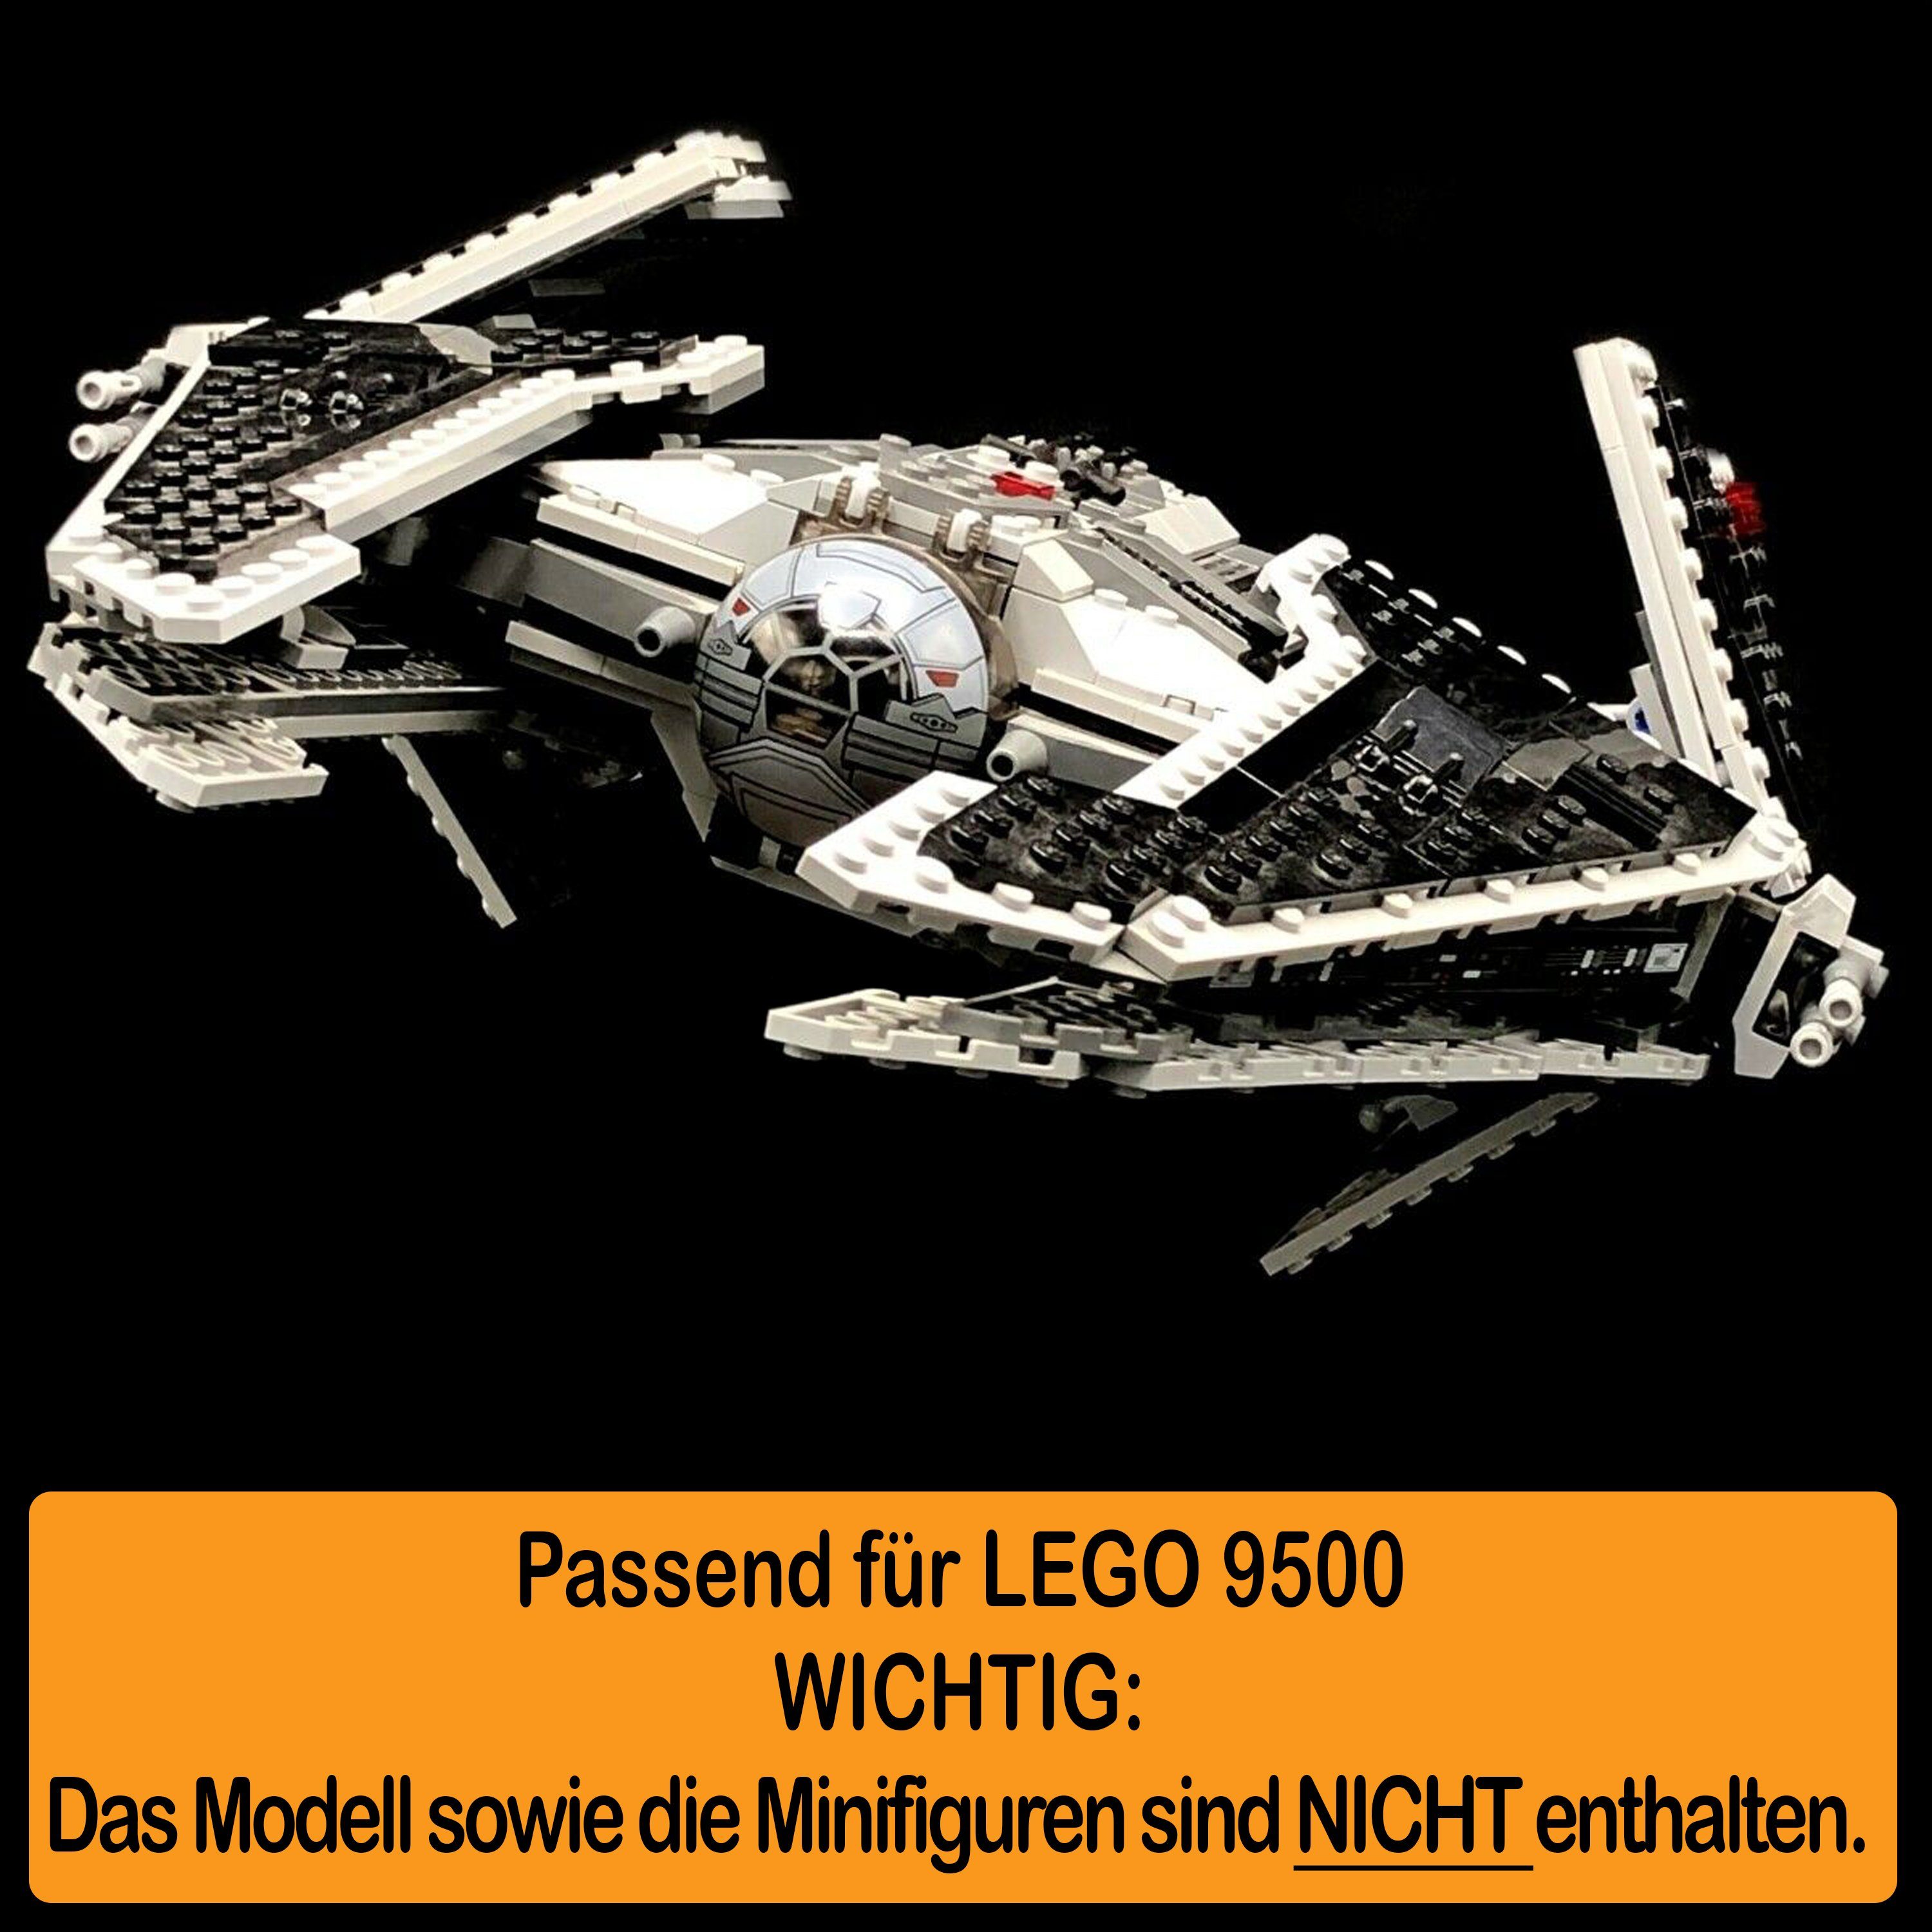 Germany Sith selbst class zusammenbauen), LEGO Positionen Stand Winkel für zum einstellbar, Acryl 9500 100% in Fury (verschiedene und Interceptor Display Made AREA17 Standfuß